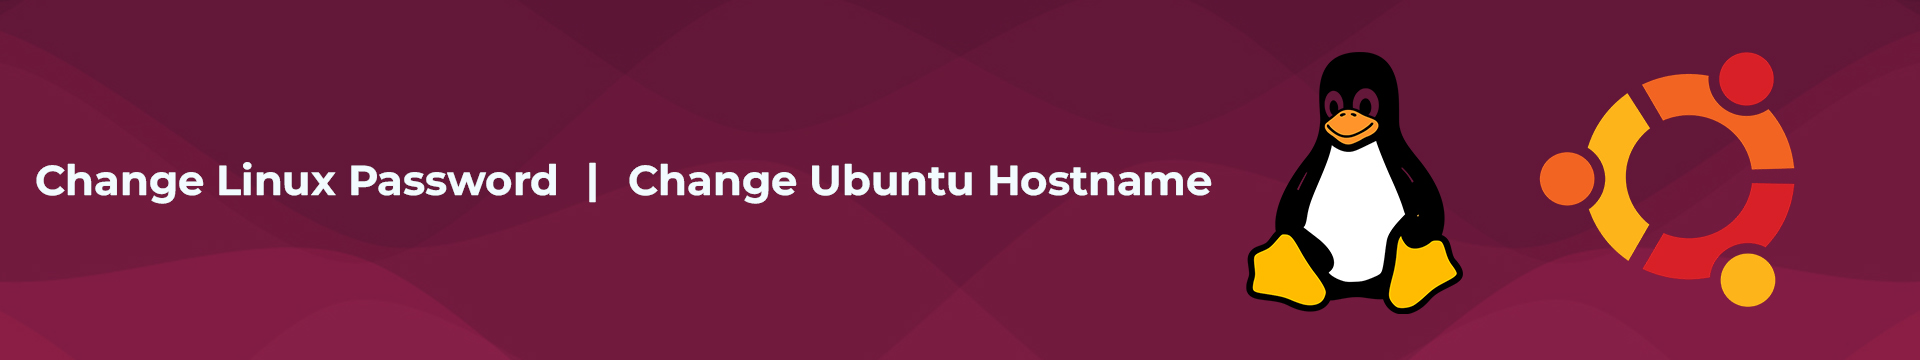 How to Change Linux Password? How to Сhange Ubuntu Hostname?